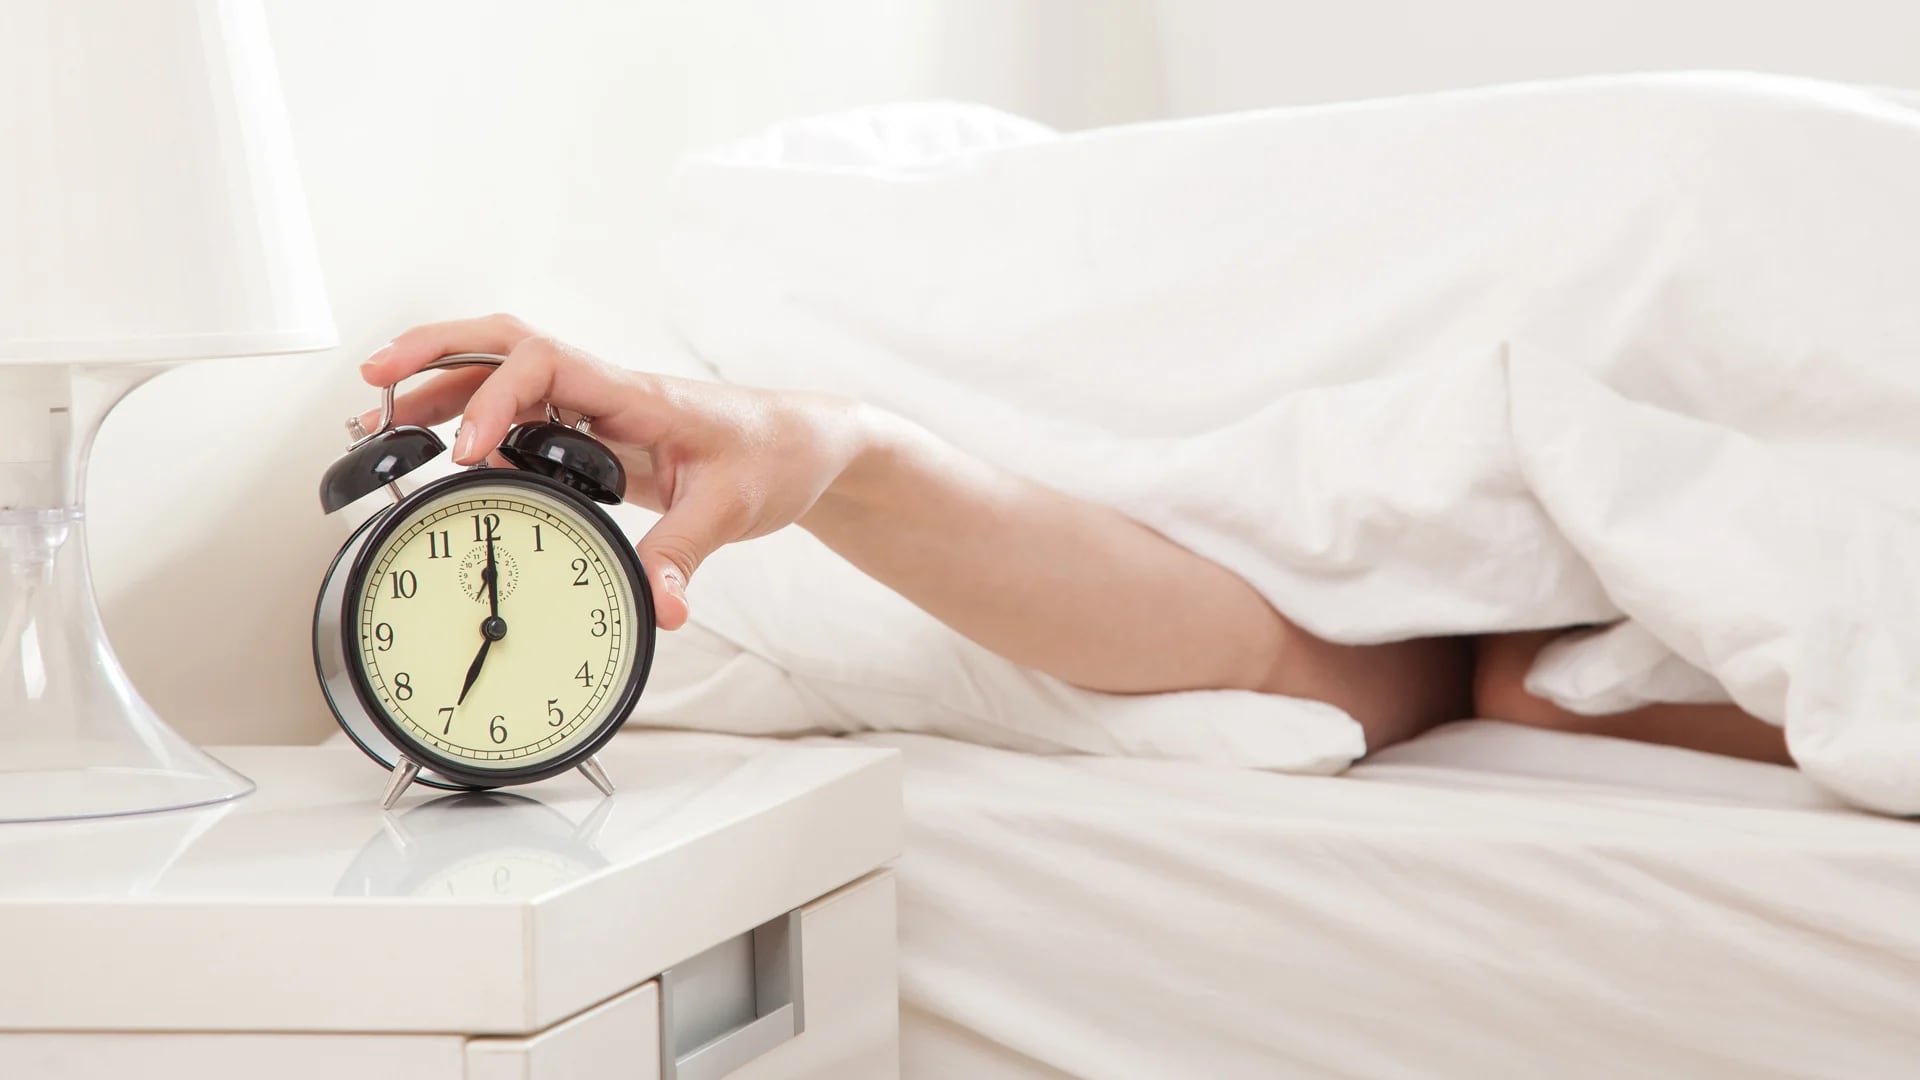 El jet lag social está asociado con una salud más pobre, enfermedades de corazón, peor estado de humor y una mayor fatiga y somnolencia